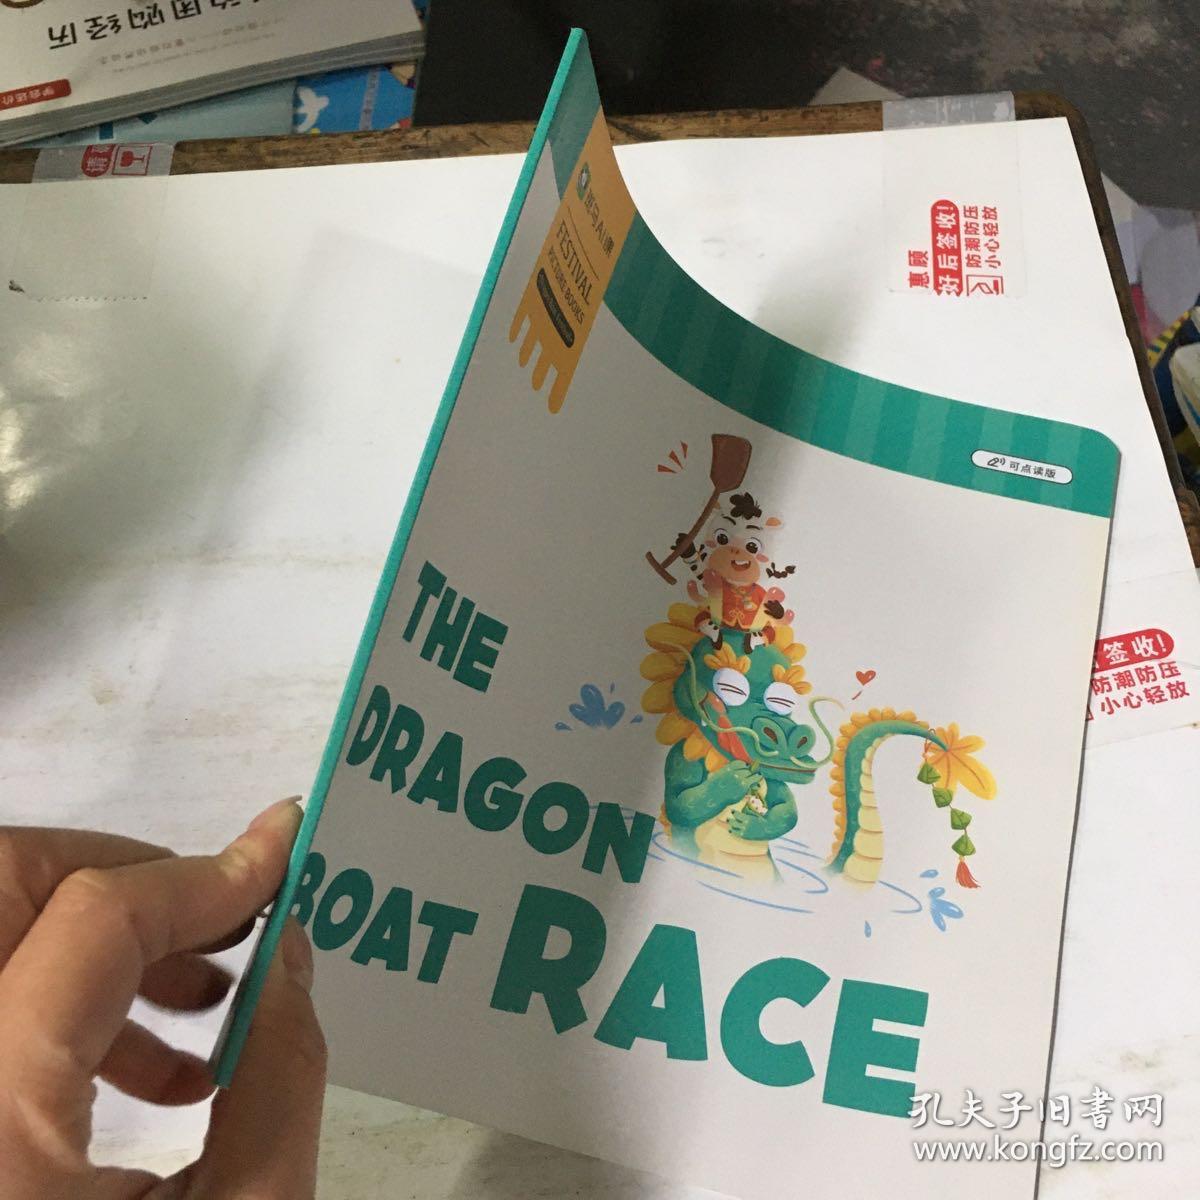 斑马Al课 the dragon boat  race